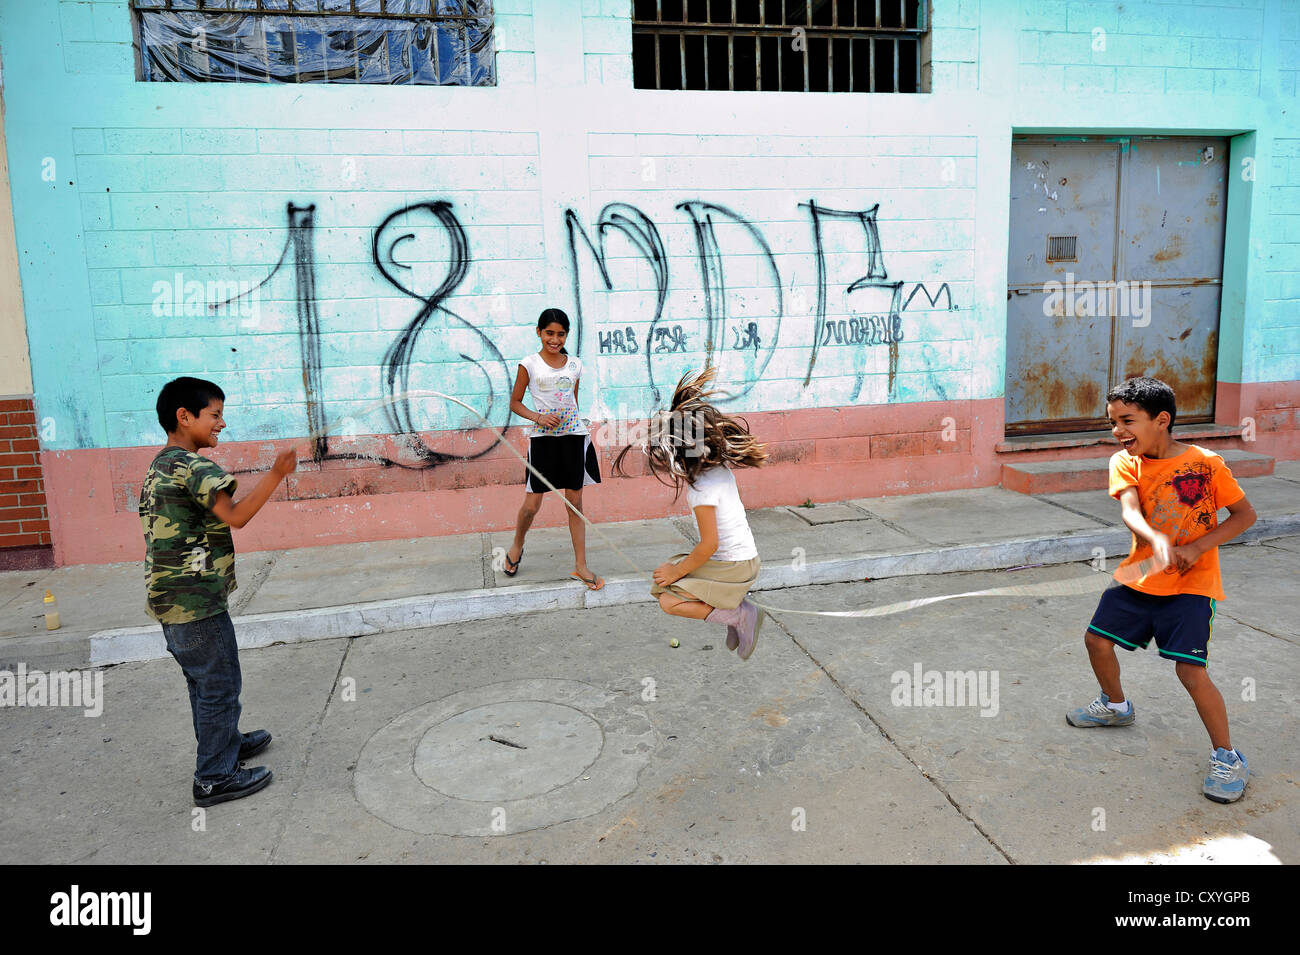 Enfants jouant devant un mur de graffiti de la Mara 18 bande de jeunes, Lomas de Santa Faz slum Banque D'Images